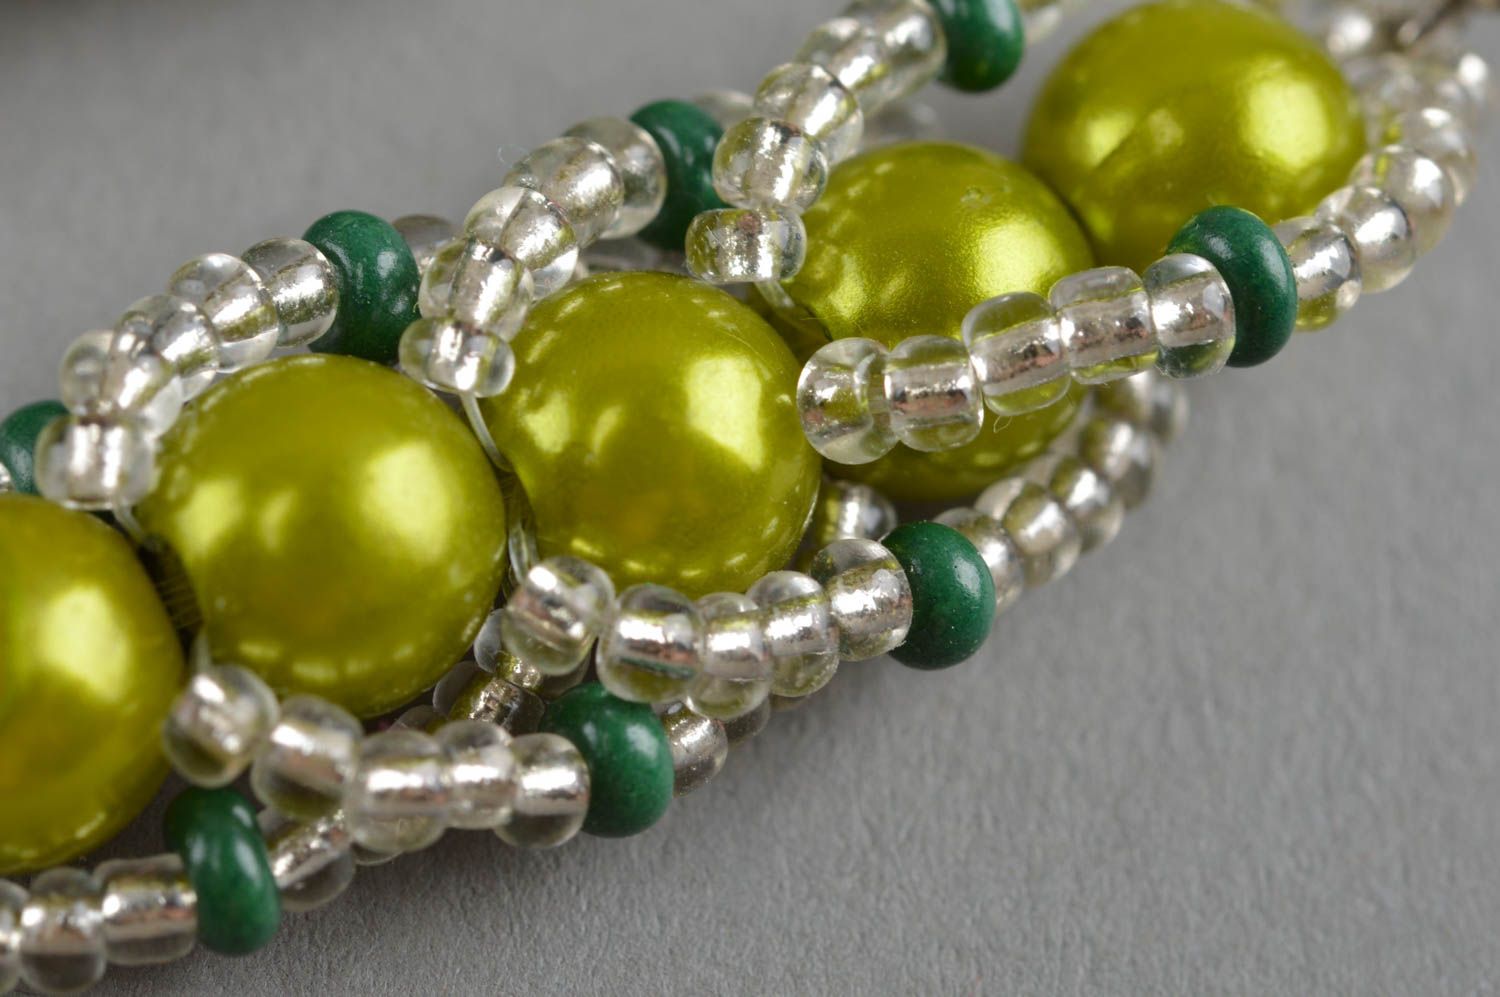 Stylish handmade beaded earrings designer earrings woven of beads gift ideas photo 5